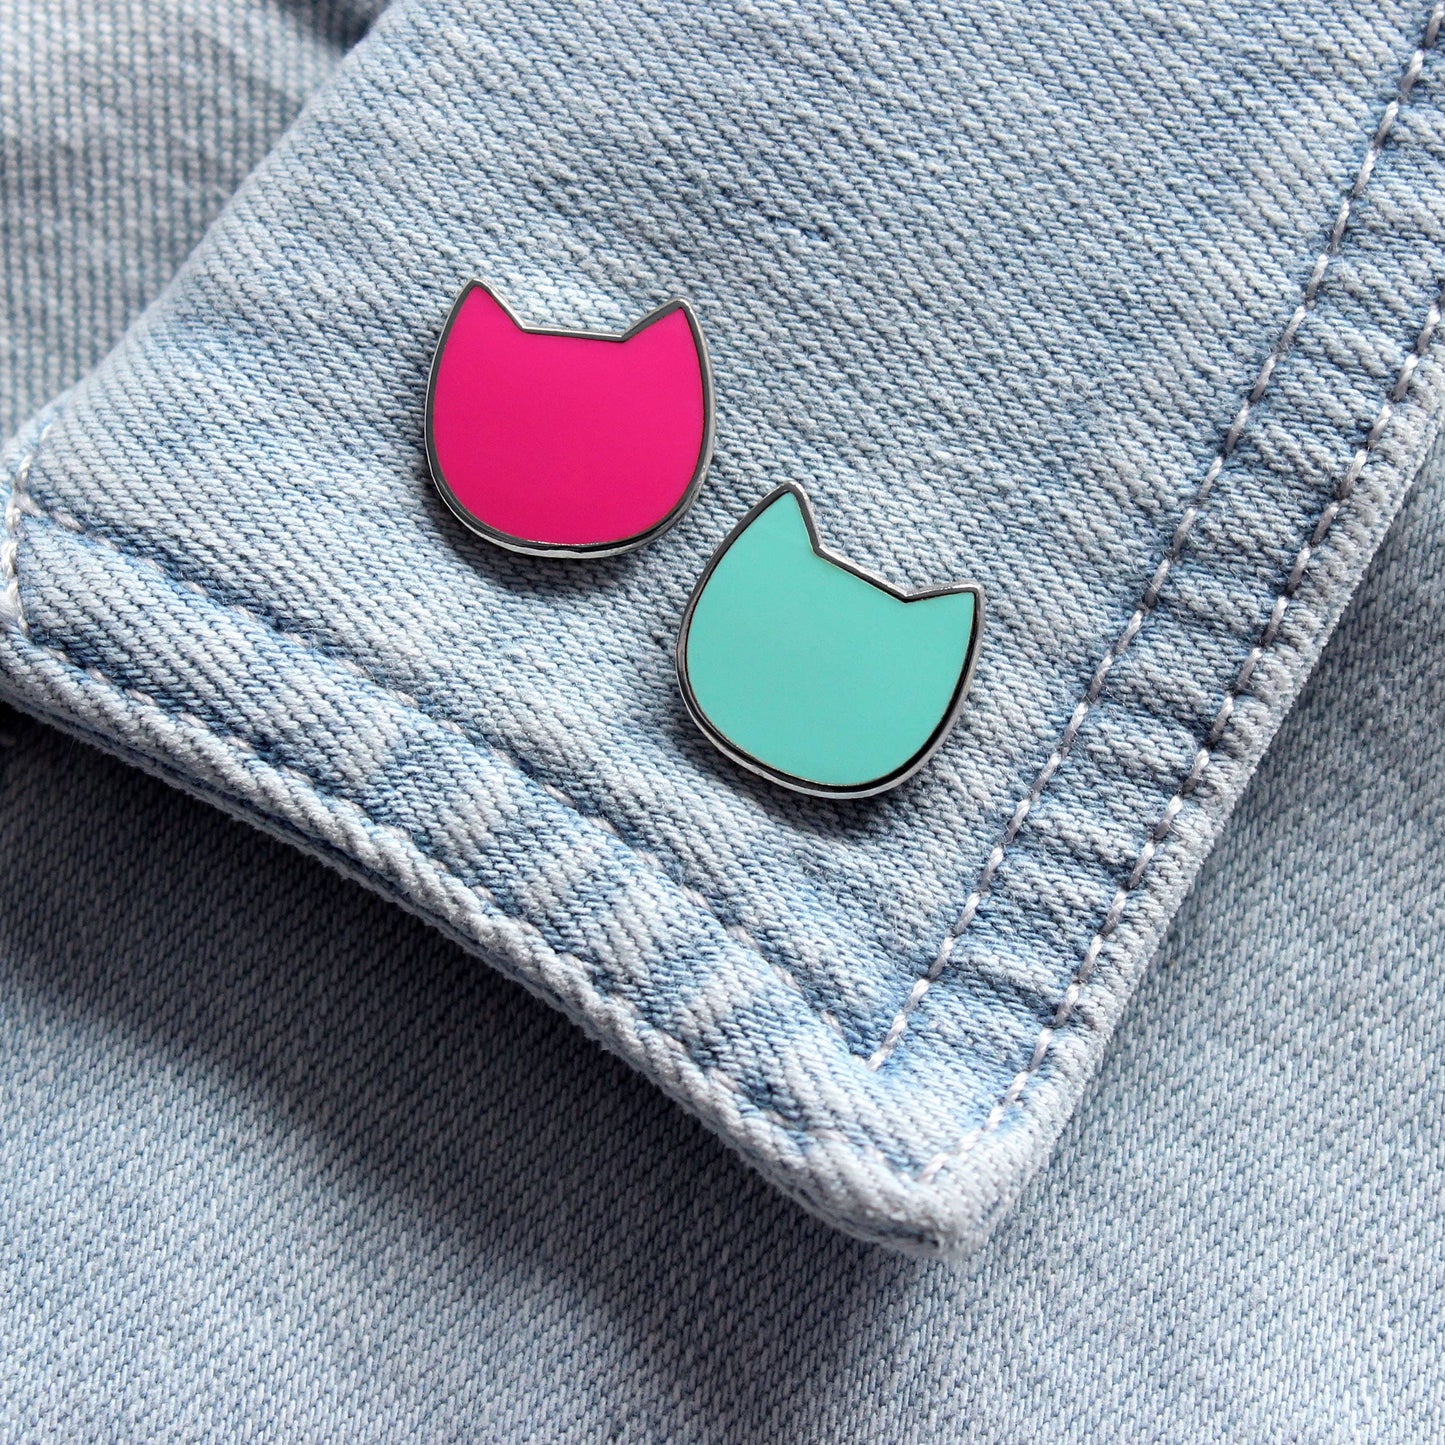 Mini Cat Enamel Pin Badge - Turquoise